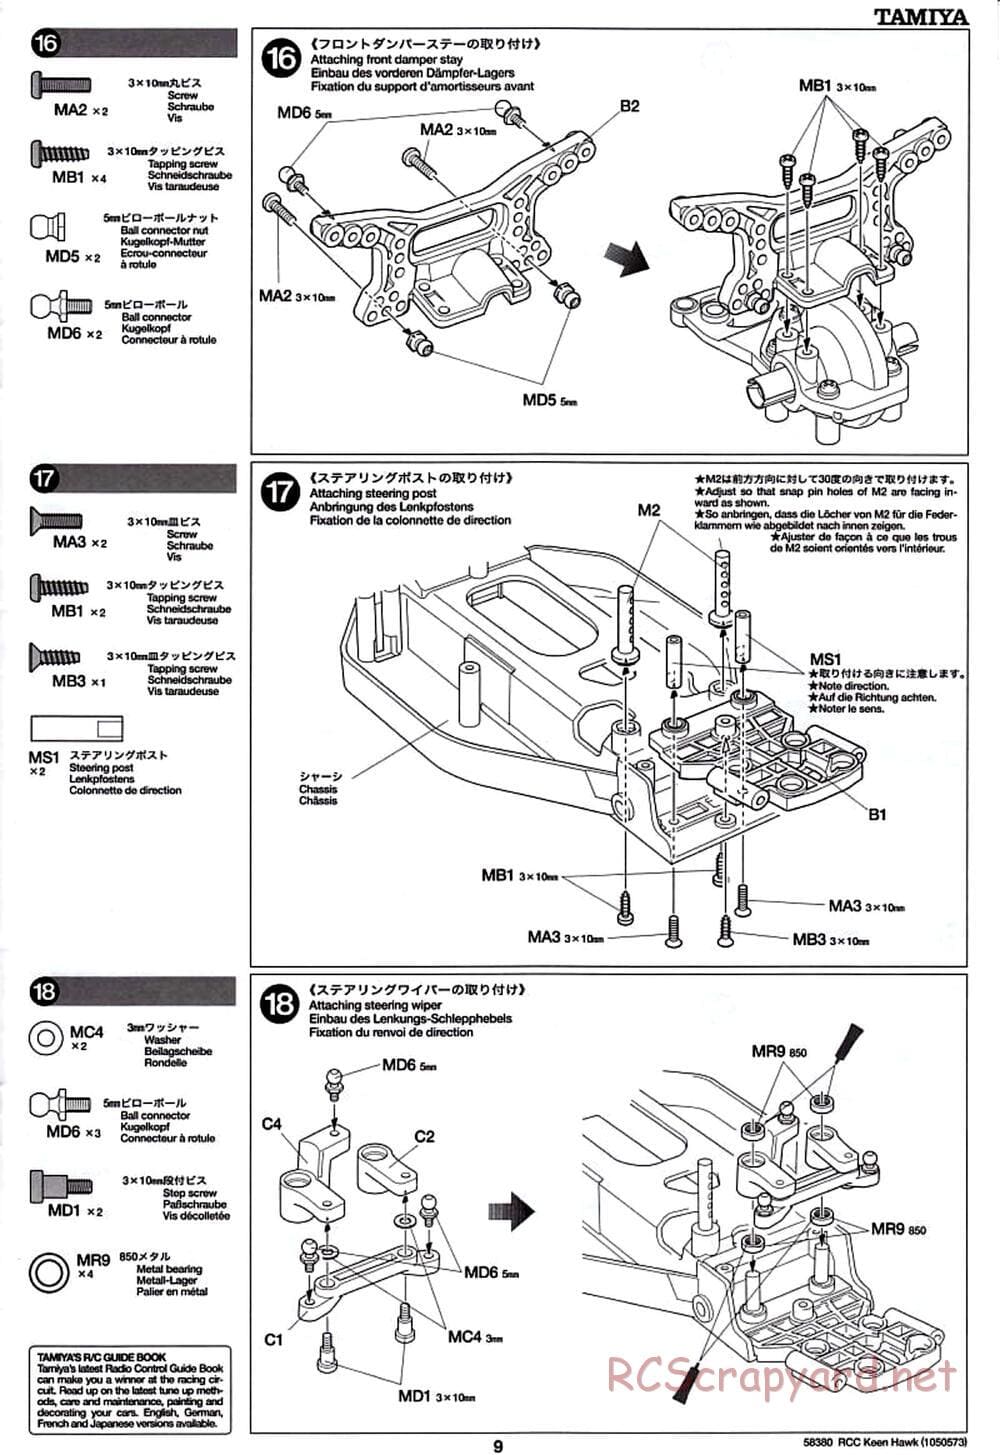 Tamiya - Keen Hawk Chassis - Manual - Page 9